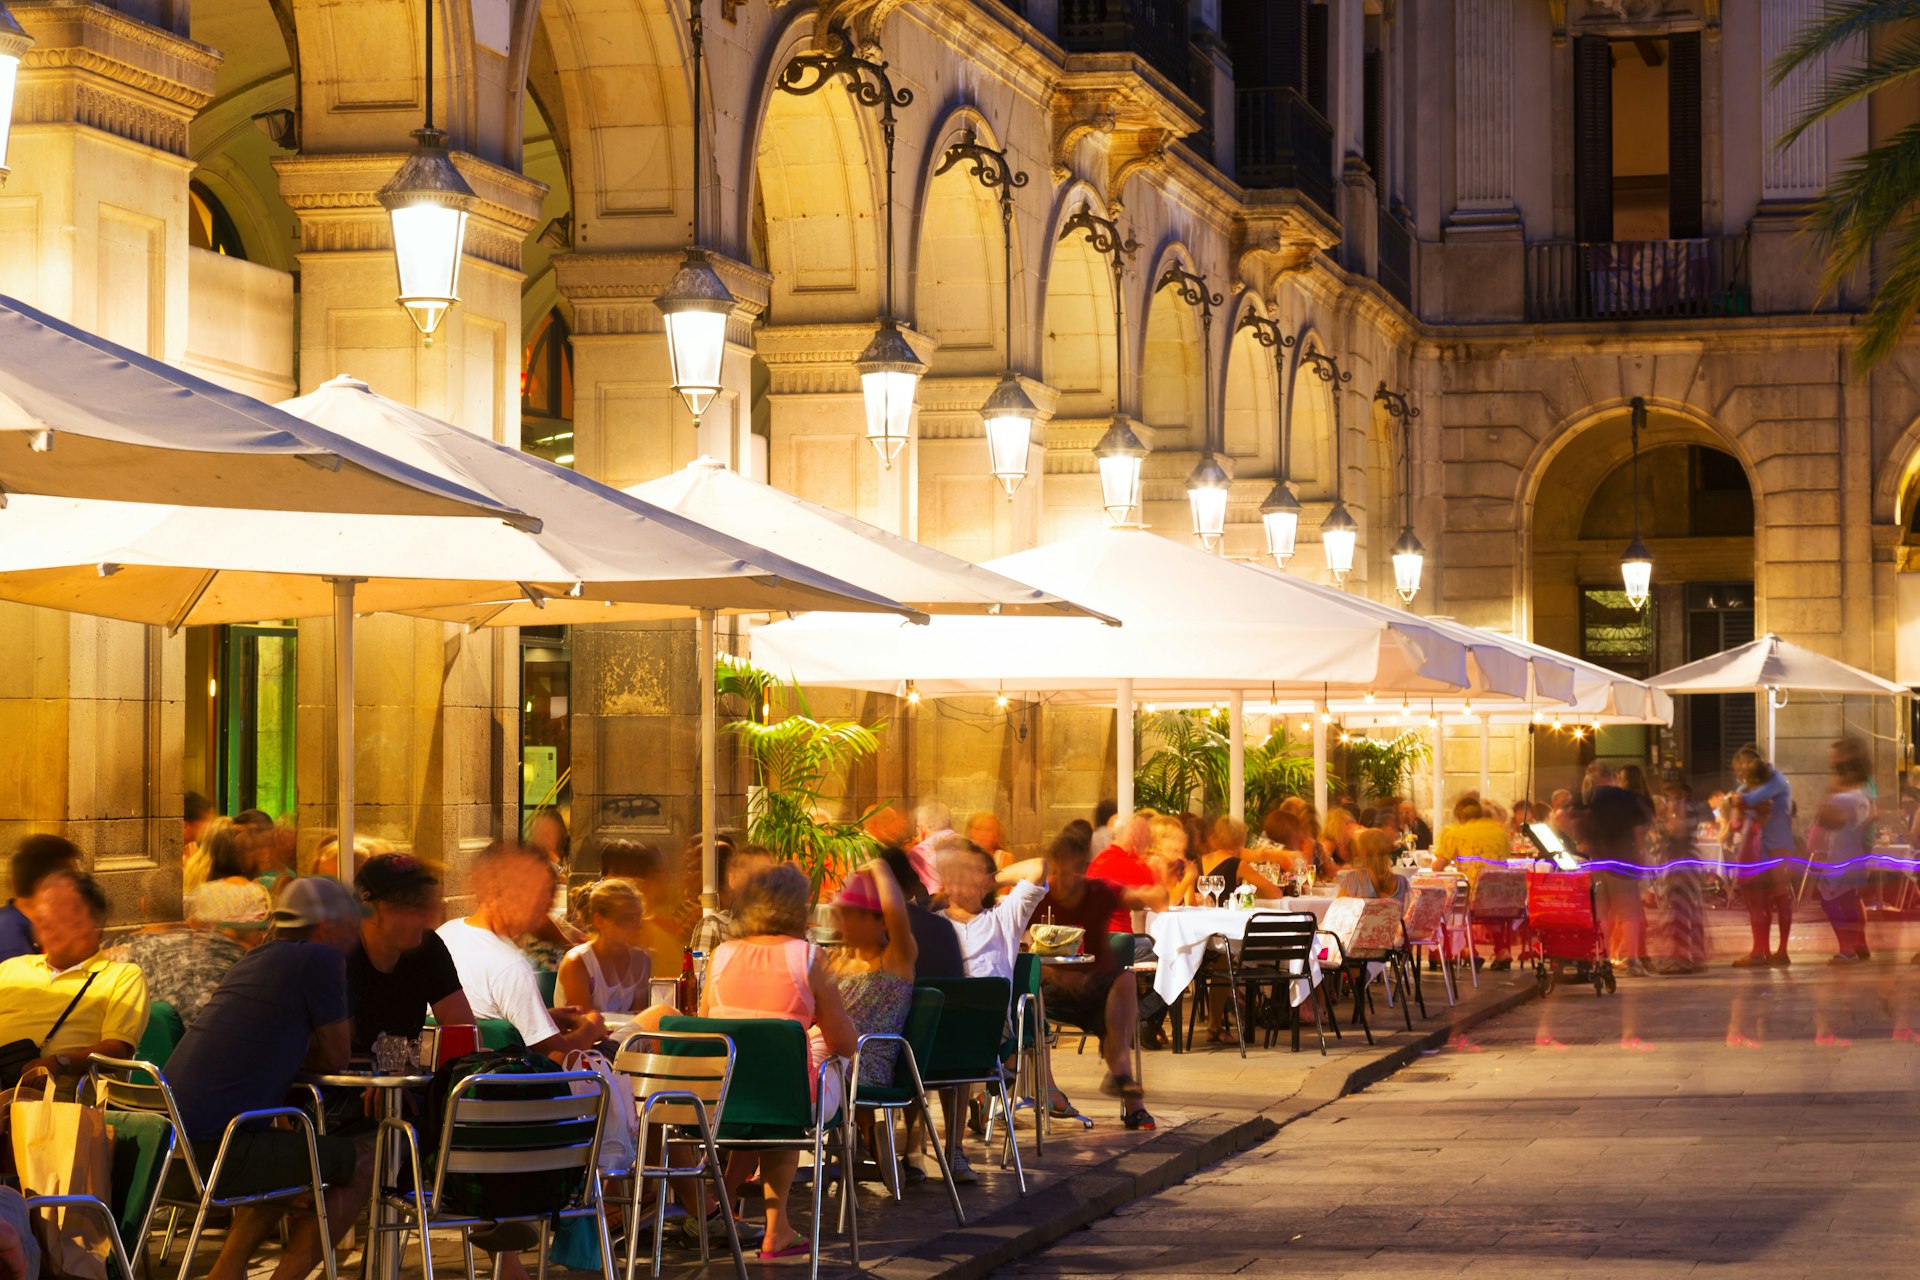 Outdoor restaurants at Placa Reial in night